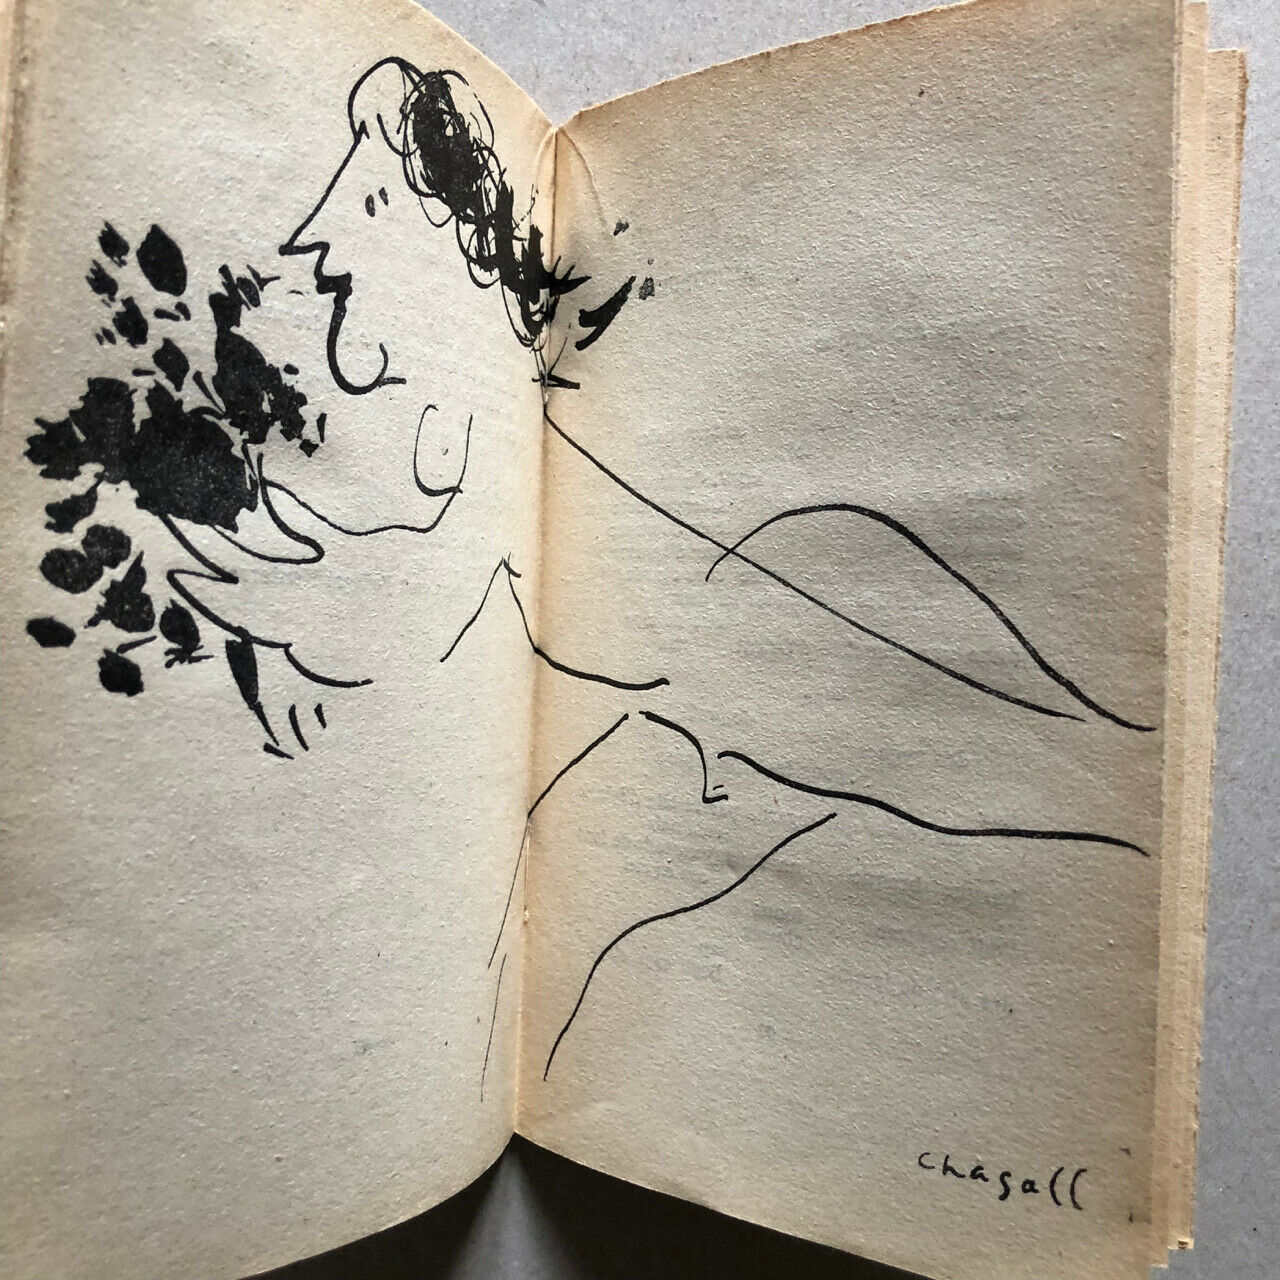 [Matisse, Chagall]Pierre Demarne — Pure Peine perdue — poème & dessin originaux.